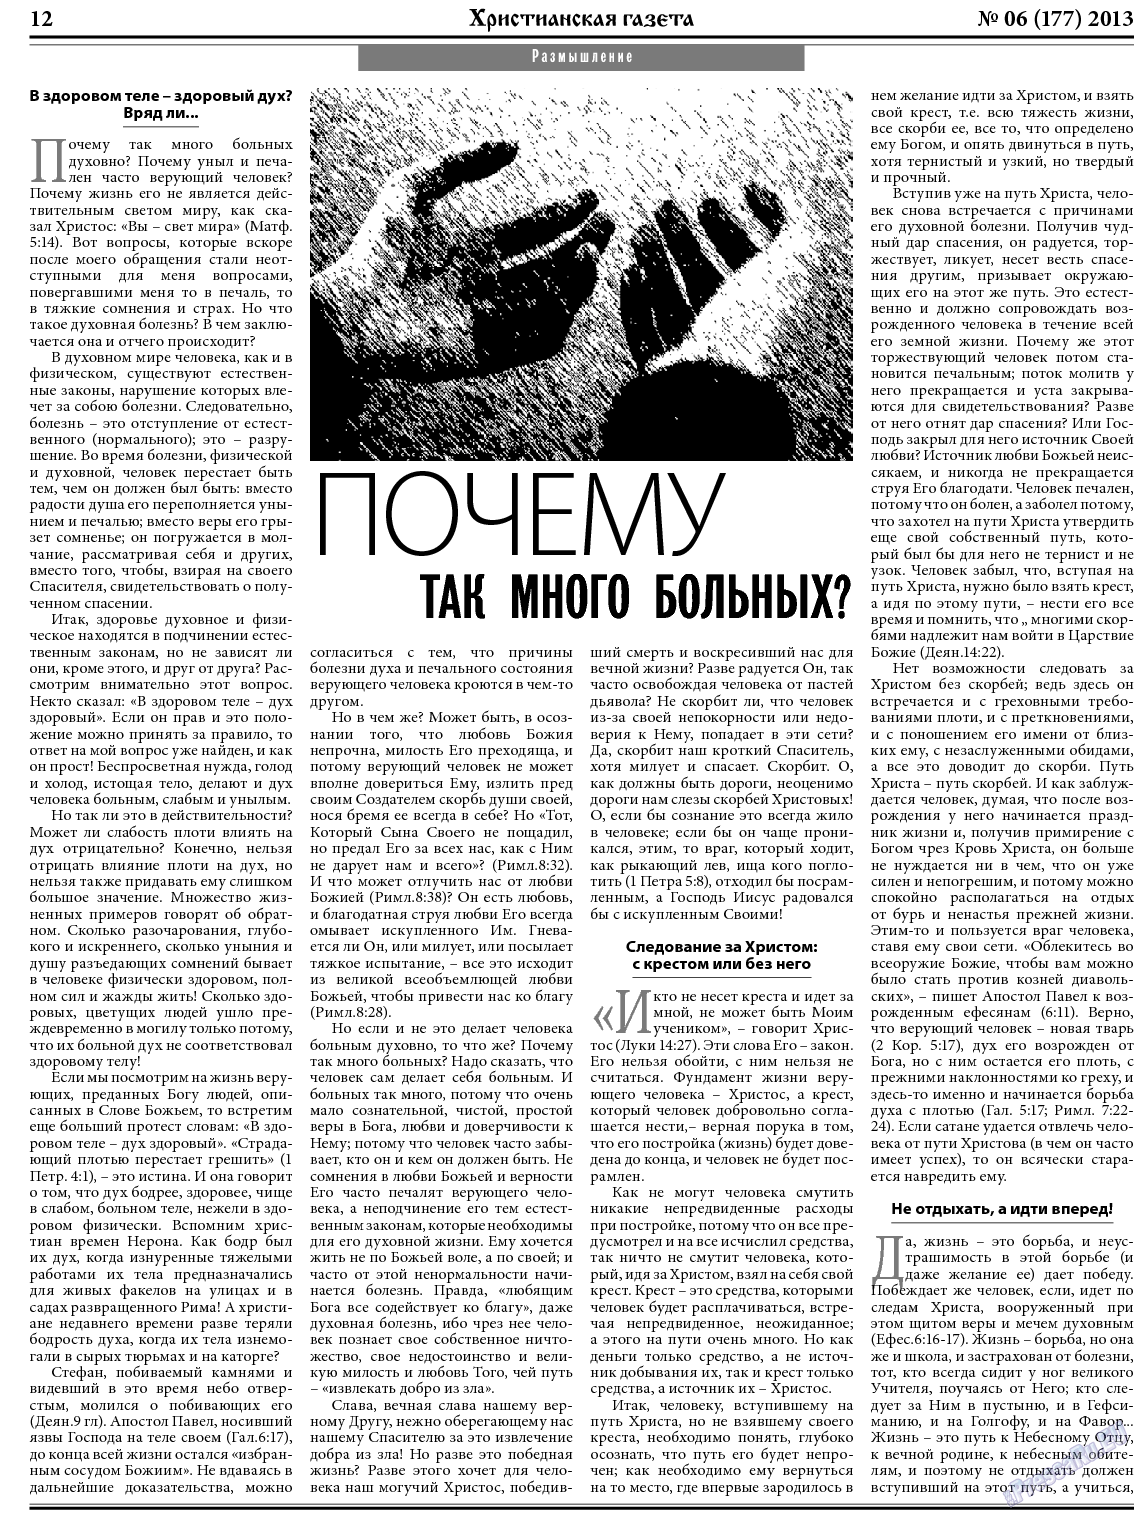 Христианская газета, газета. 2013 №6 стр.12